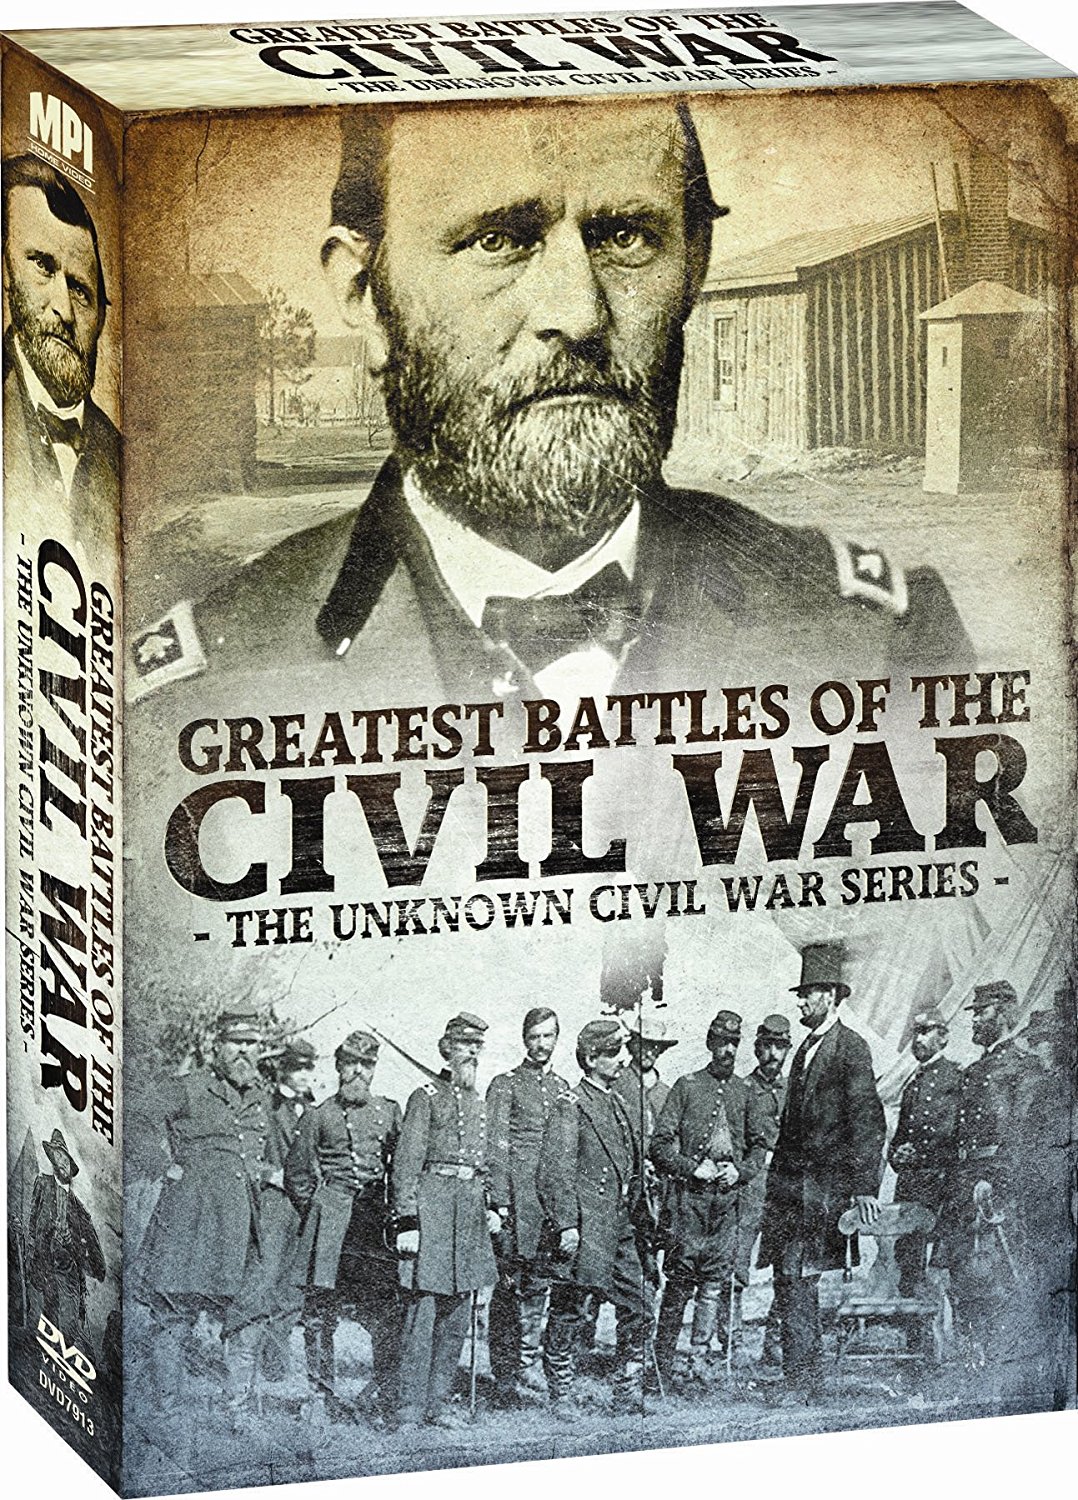 DEAL ALERT: Greatest Battles of the Civil War – 55% off!